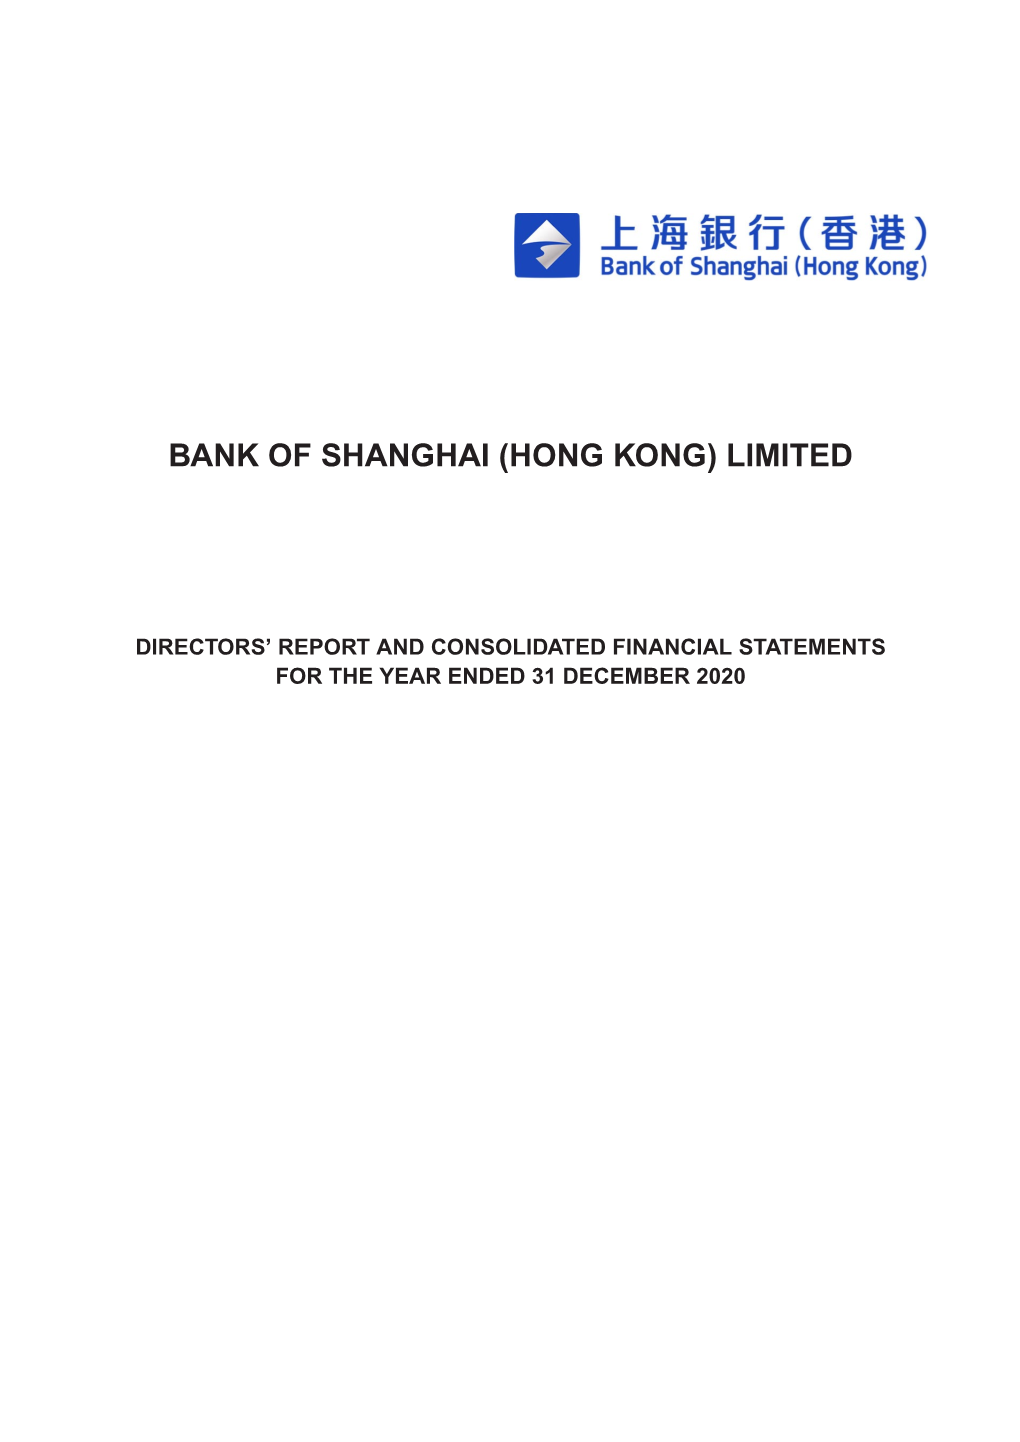 Bank of Shanghai (Hong Kong) Limited